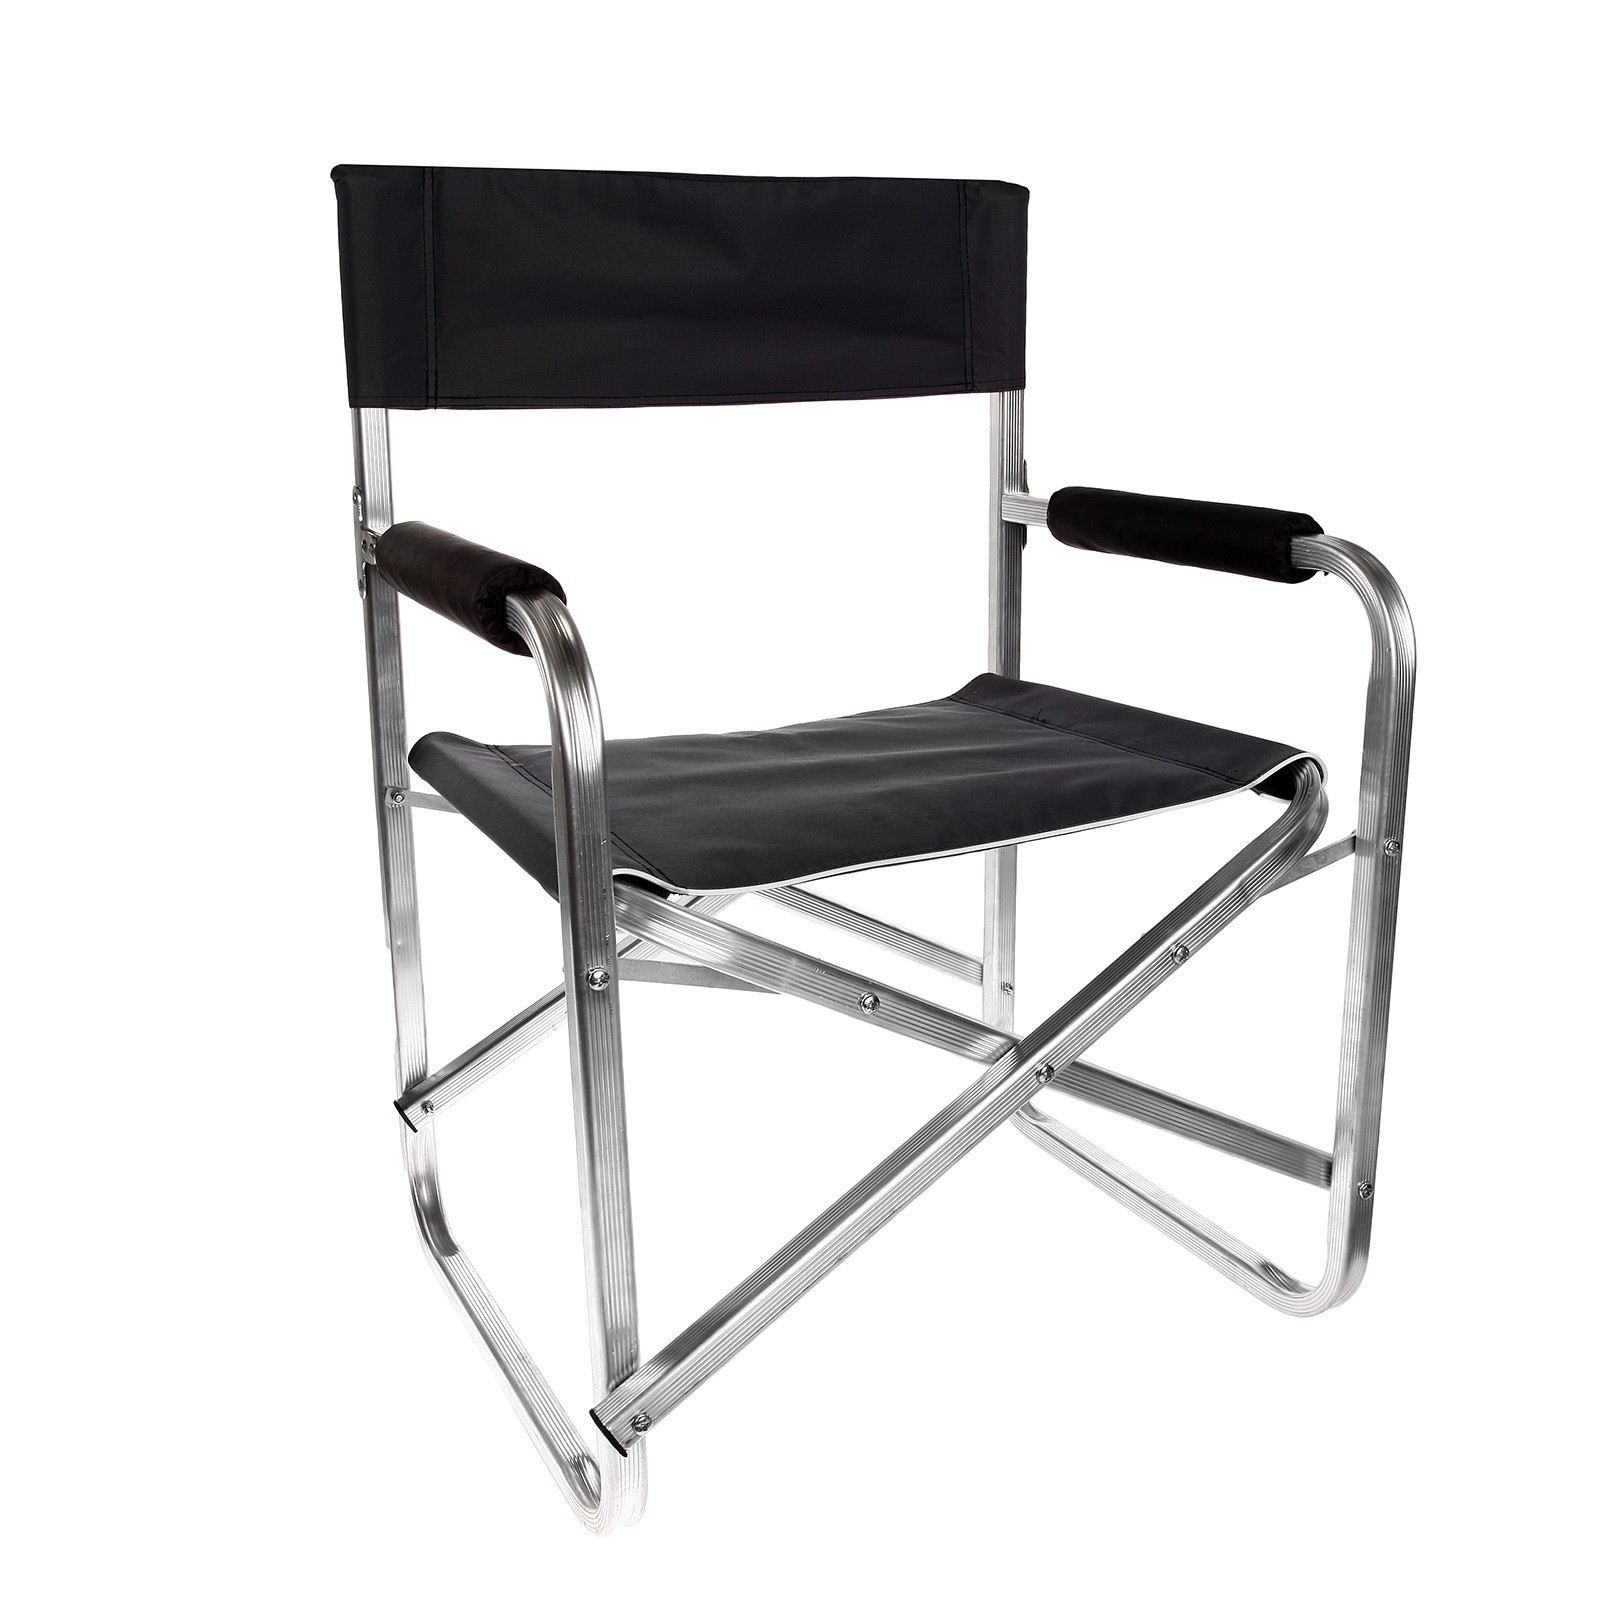 Алюминиевые складные стулья. 700014 Кресло складное / a001. Кресло Indiana indi-033. Кресло складное Hy-8007. Кресло медведь d25 алюминиевое, складное.